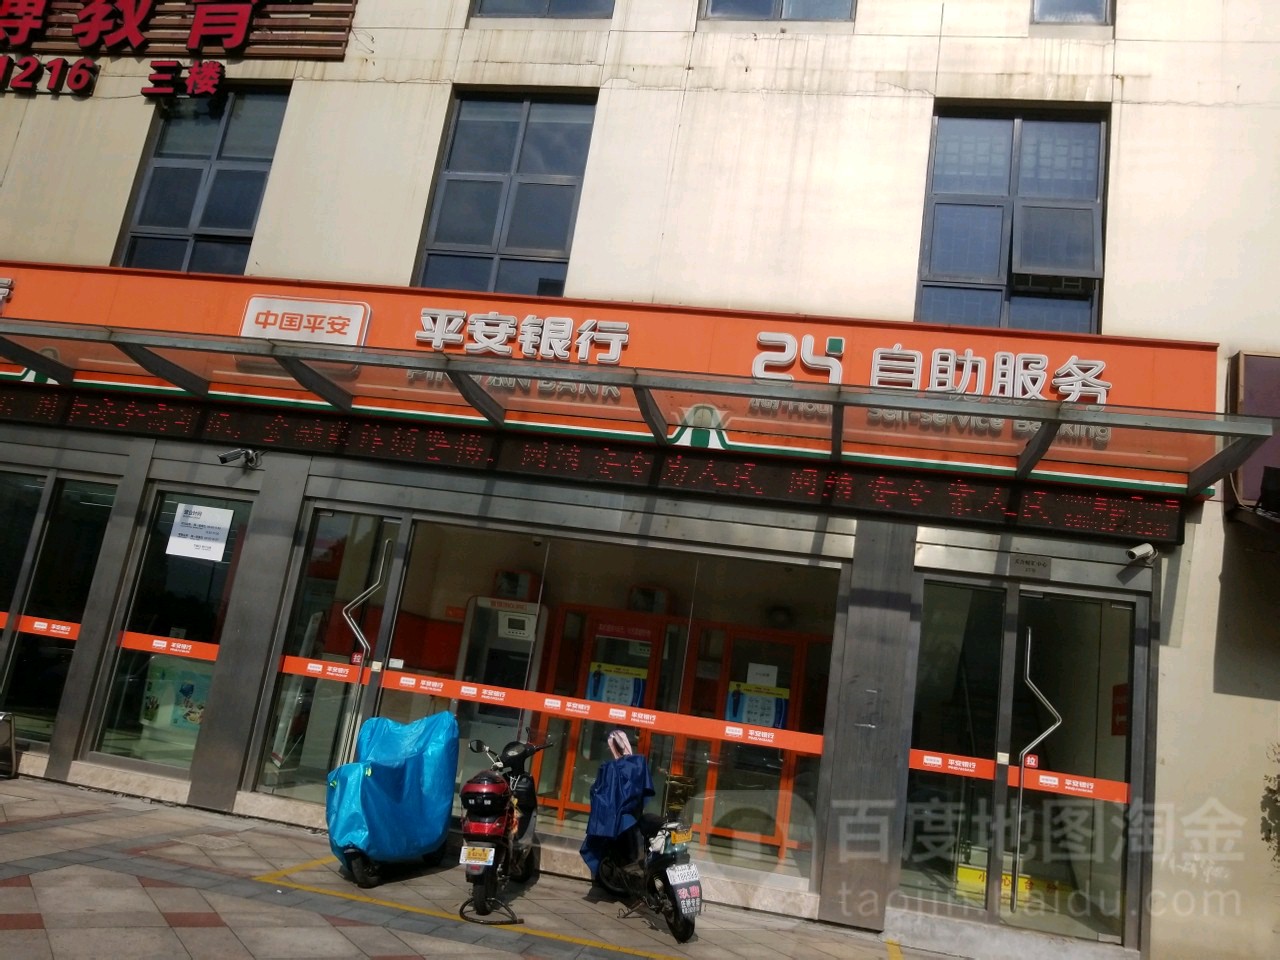 平安銀行24小時自助銀行(寧波江北支行)